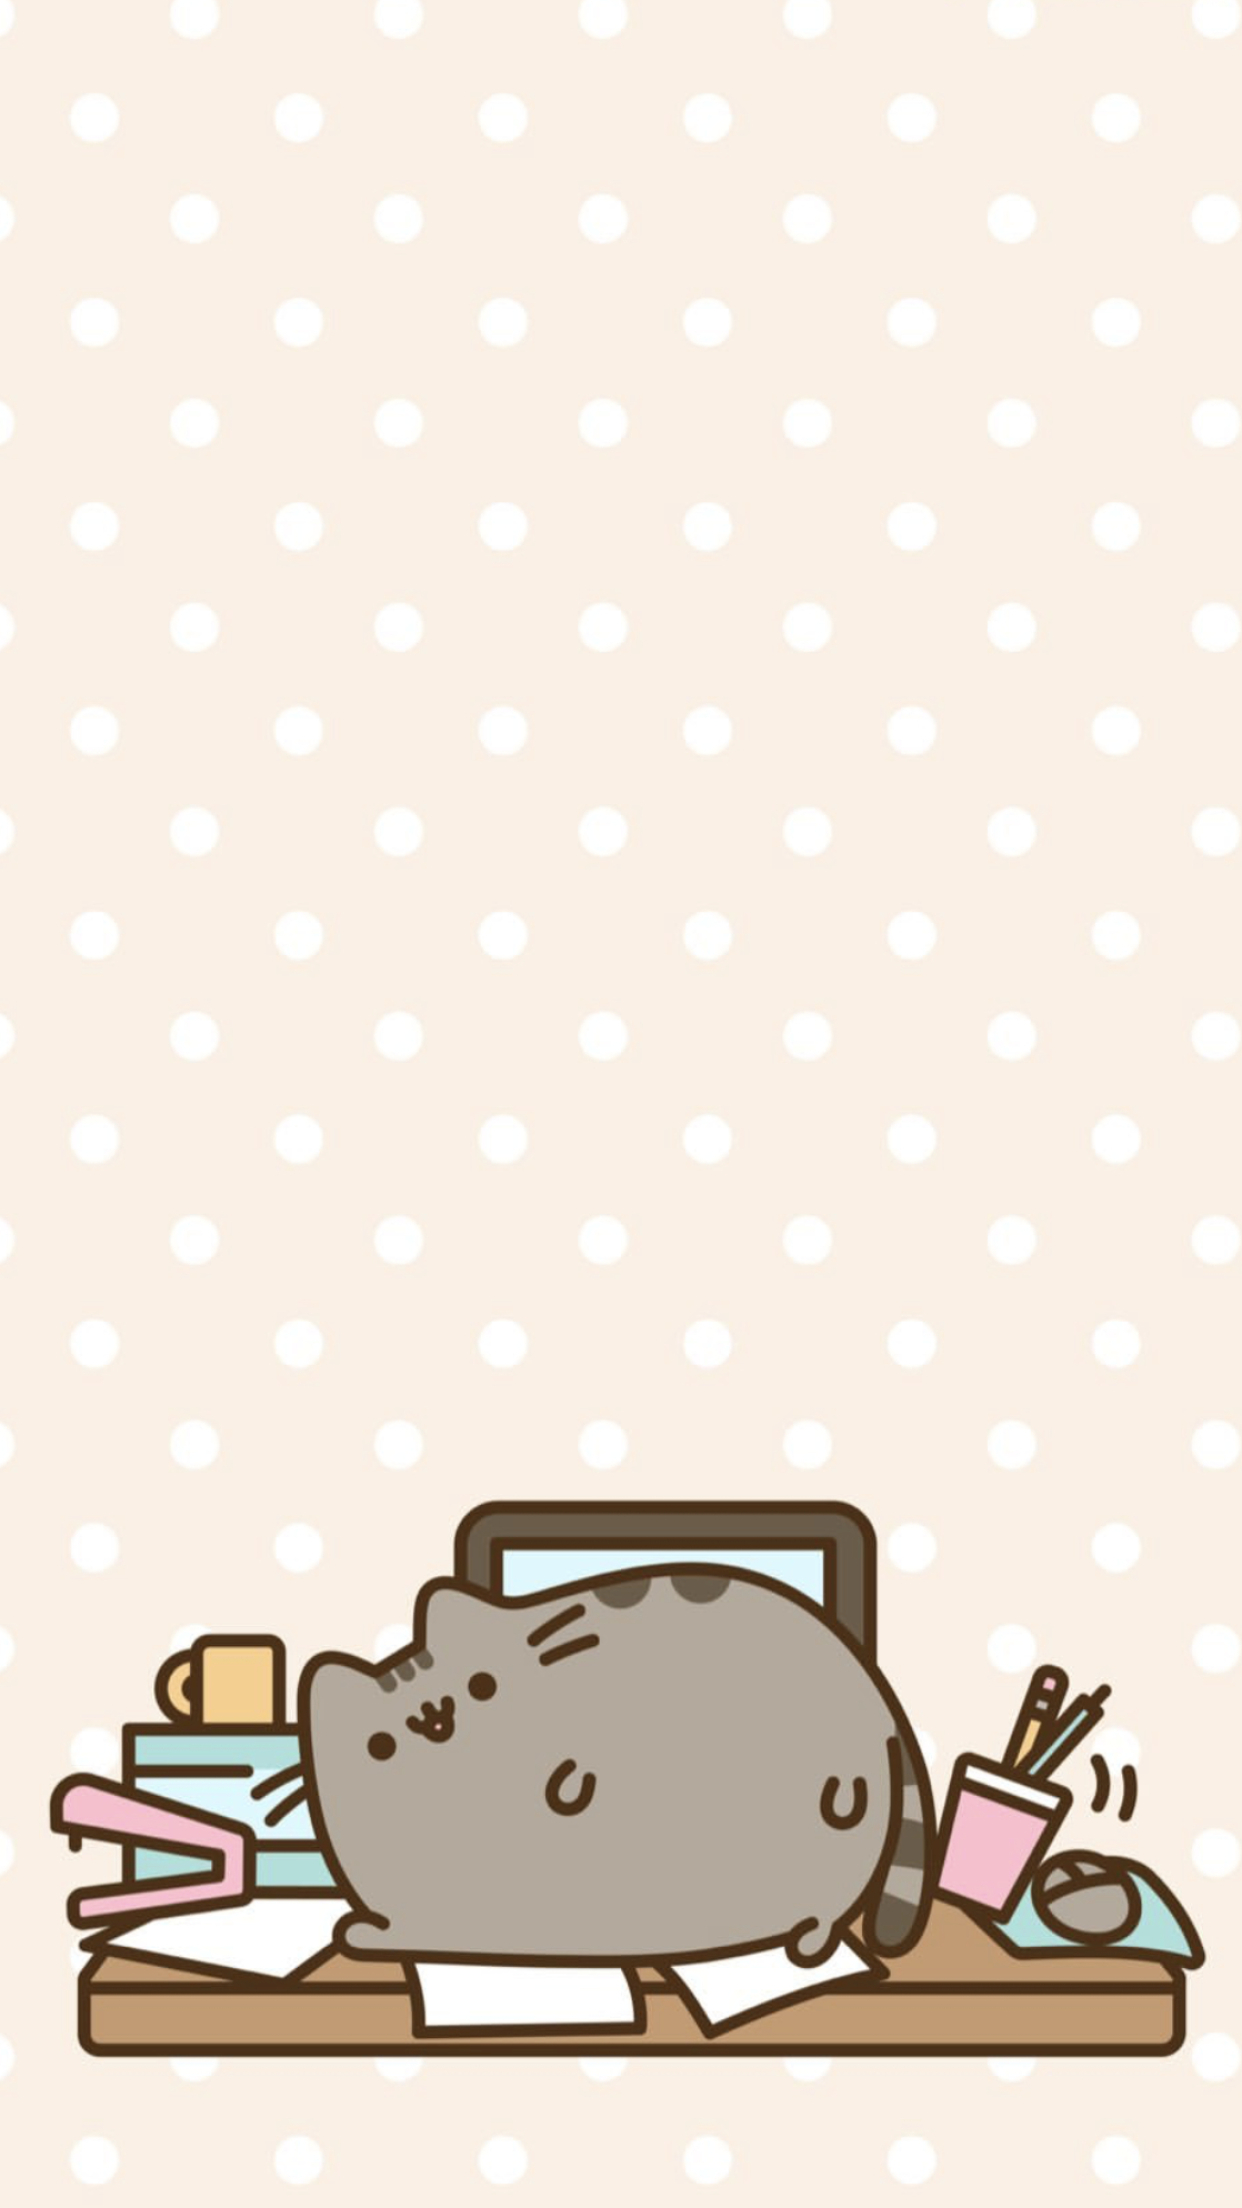 1242x2208 Pusheen the cat iPhone wallpaper | Pusheen cute, Pusheen, Pusheen cat